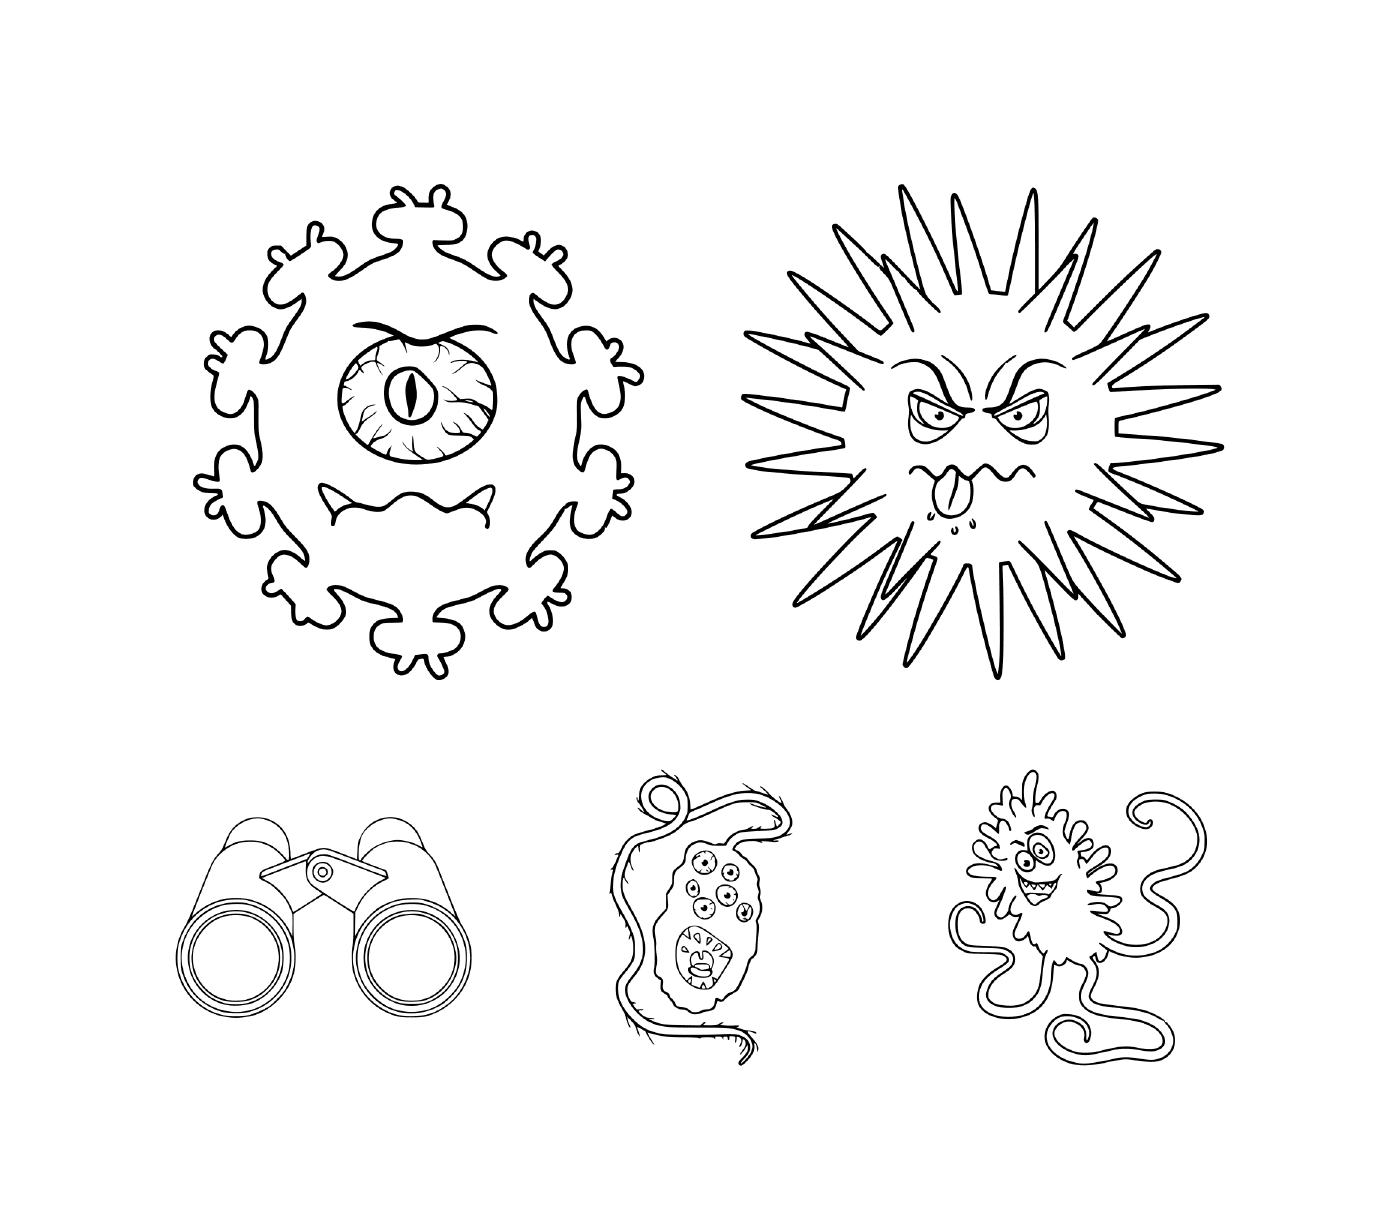   Un ensemble de personnages de dessins animés représentant différents types de microbes et le virus Covid-19 